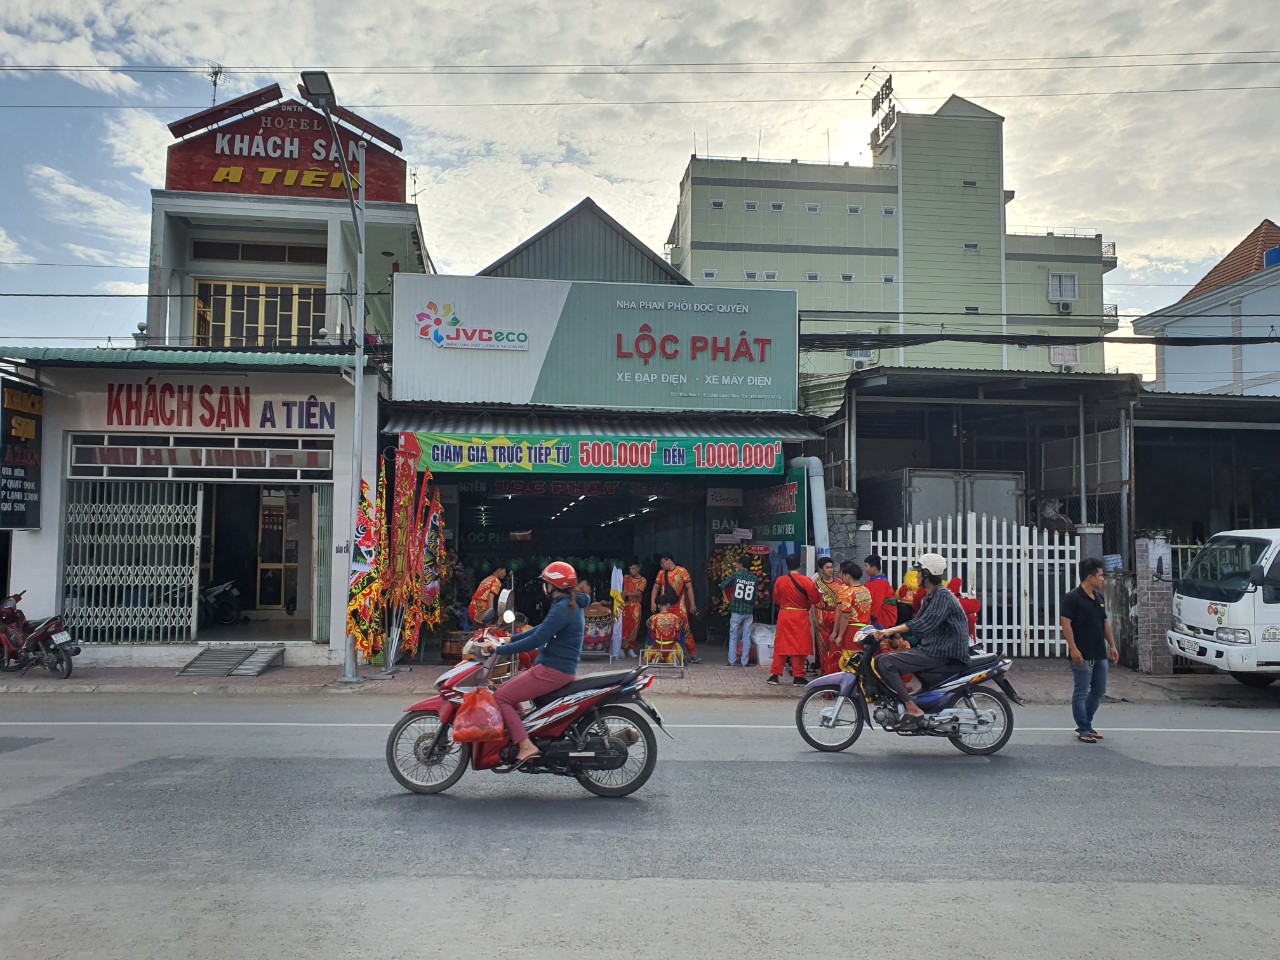 Mua xe đạp điện tại Lộc Phát, quý khách hàng sẽ được giảm giá trực tiếp từ 500.000đ đến 1.000.000đ